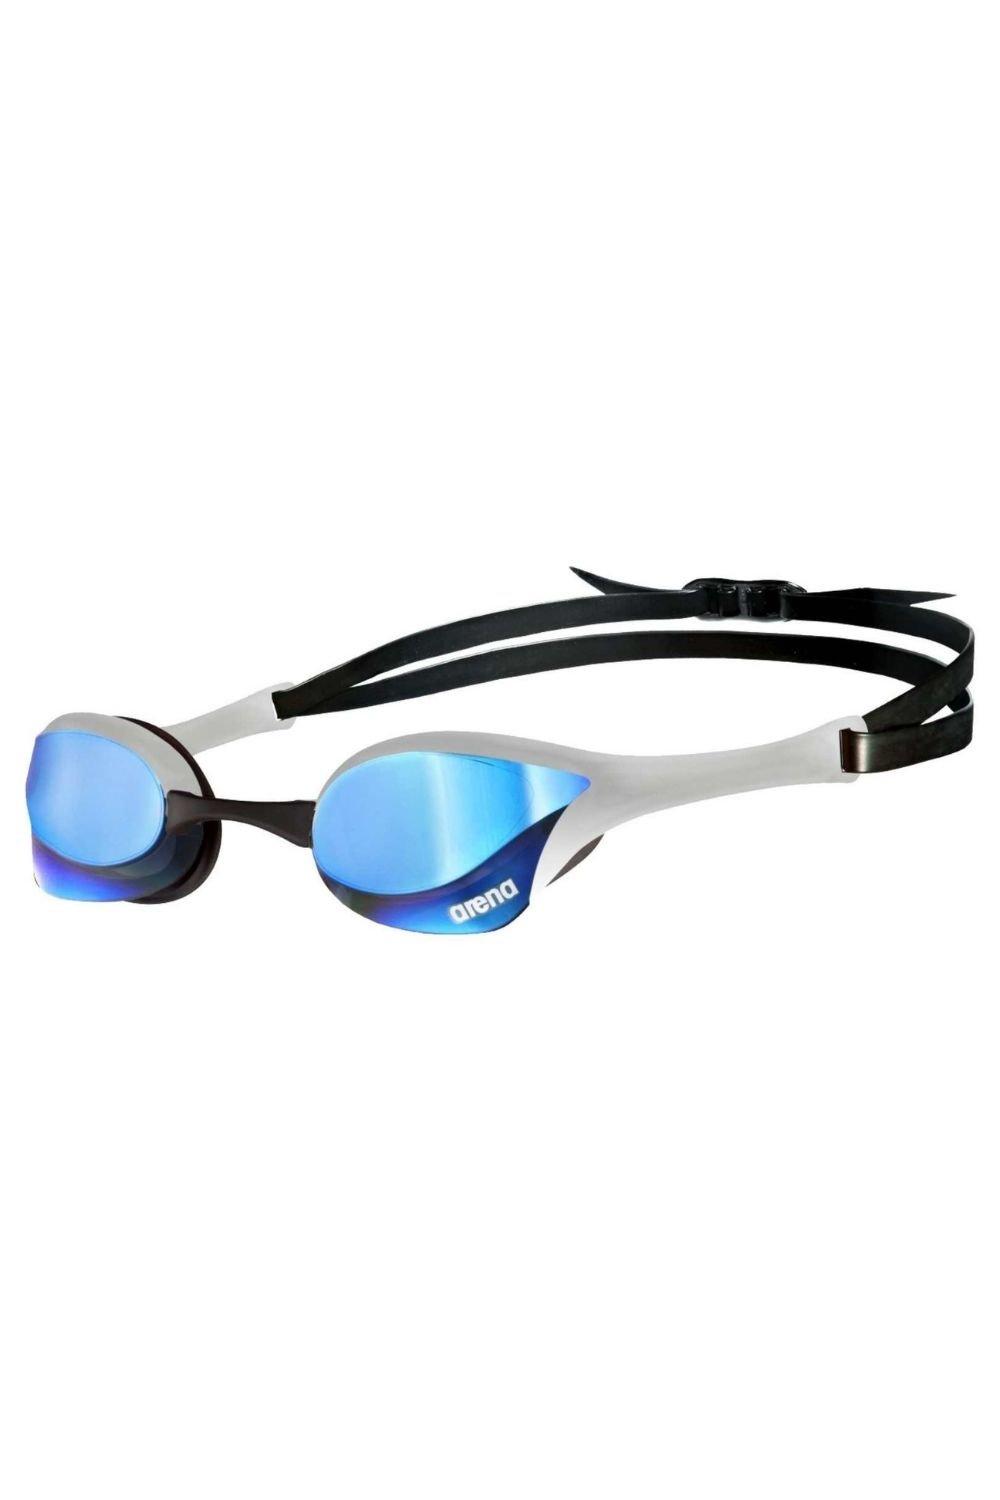 Cobra Ultra Swipe Mirror Swim Goggle - Mirror Lenses